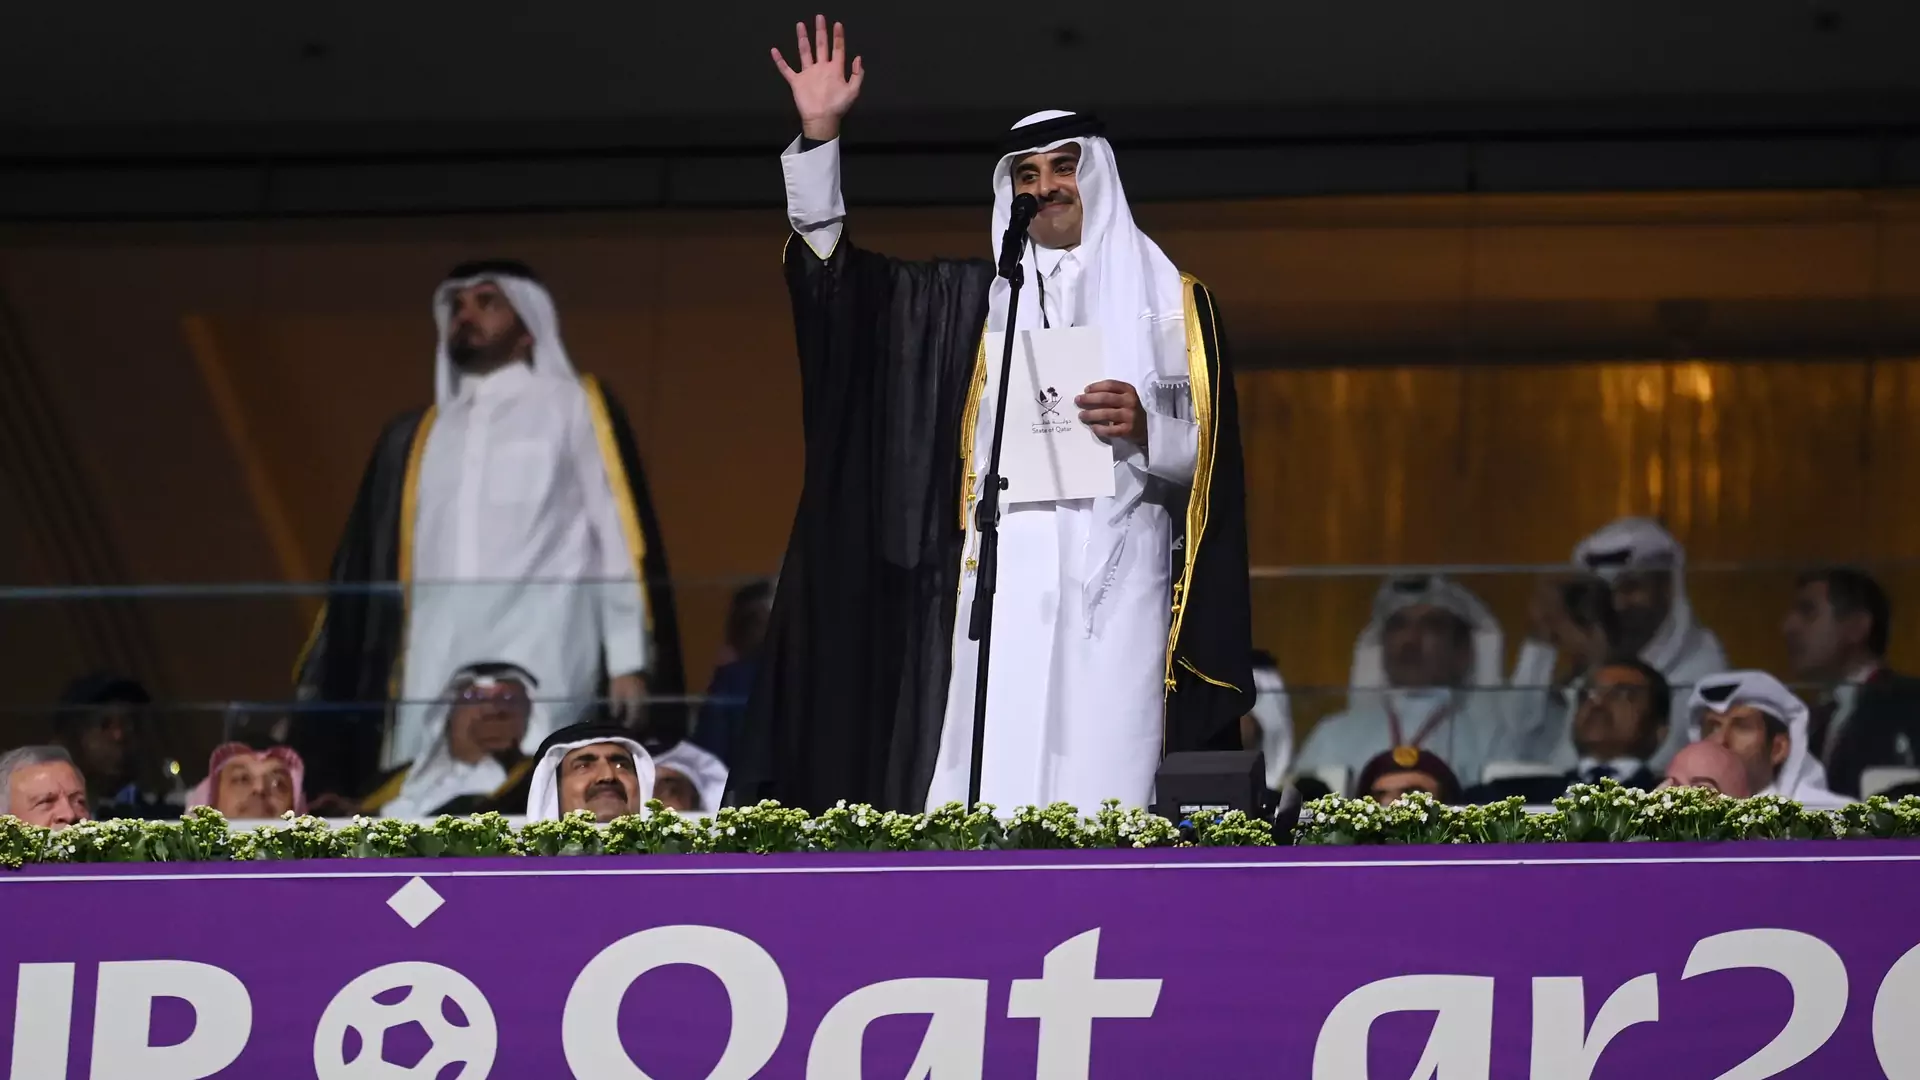 Katar to monarchia absolutna. Władza może niemal wszystko